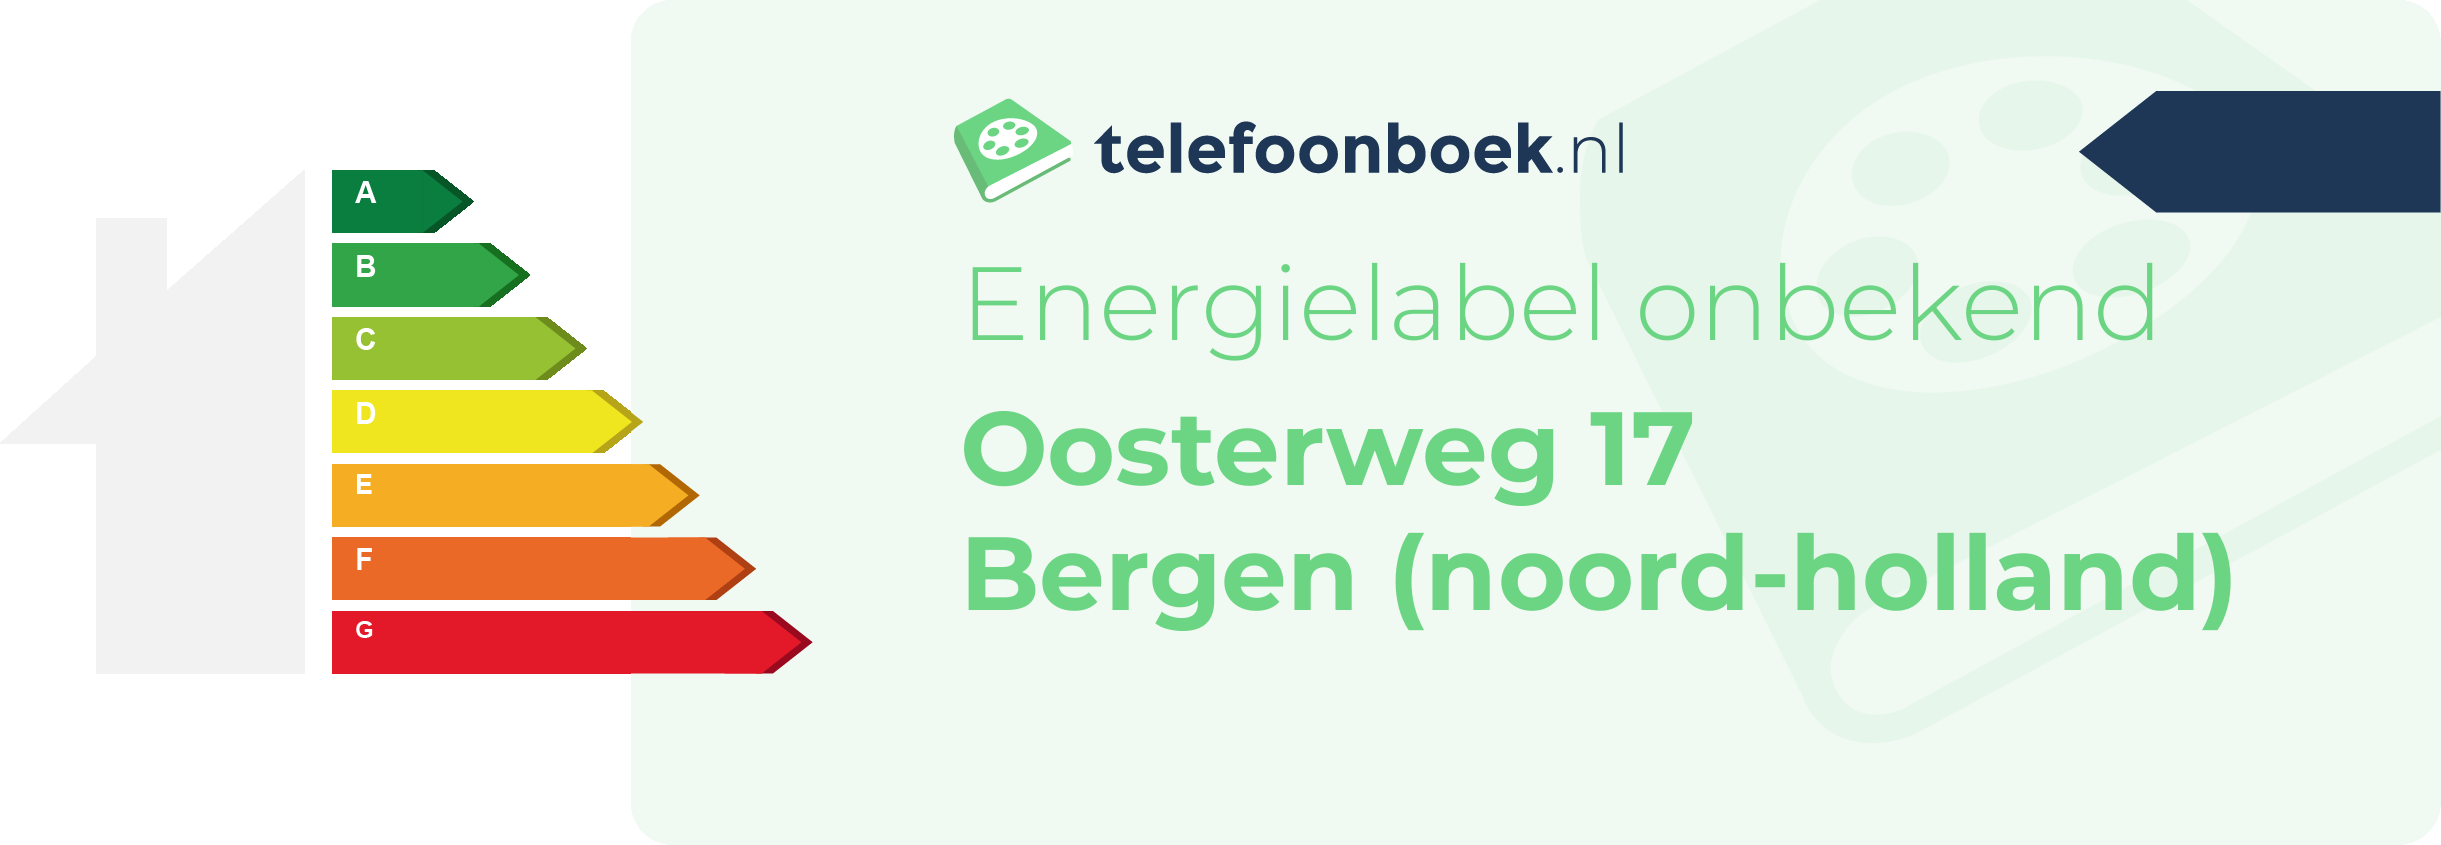 Energielabel Oosterweg 17 Bergen (Noord-Holland)